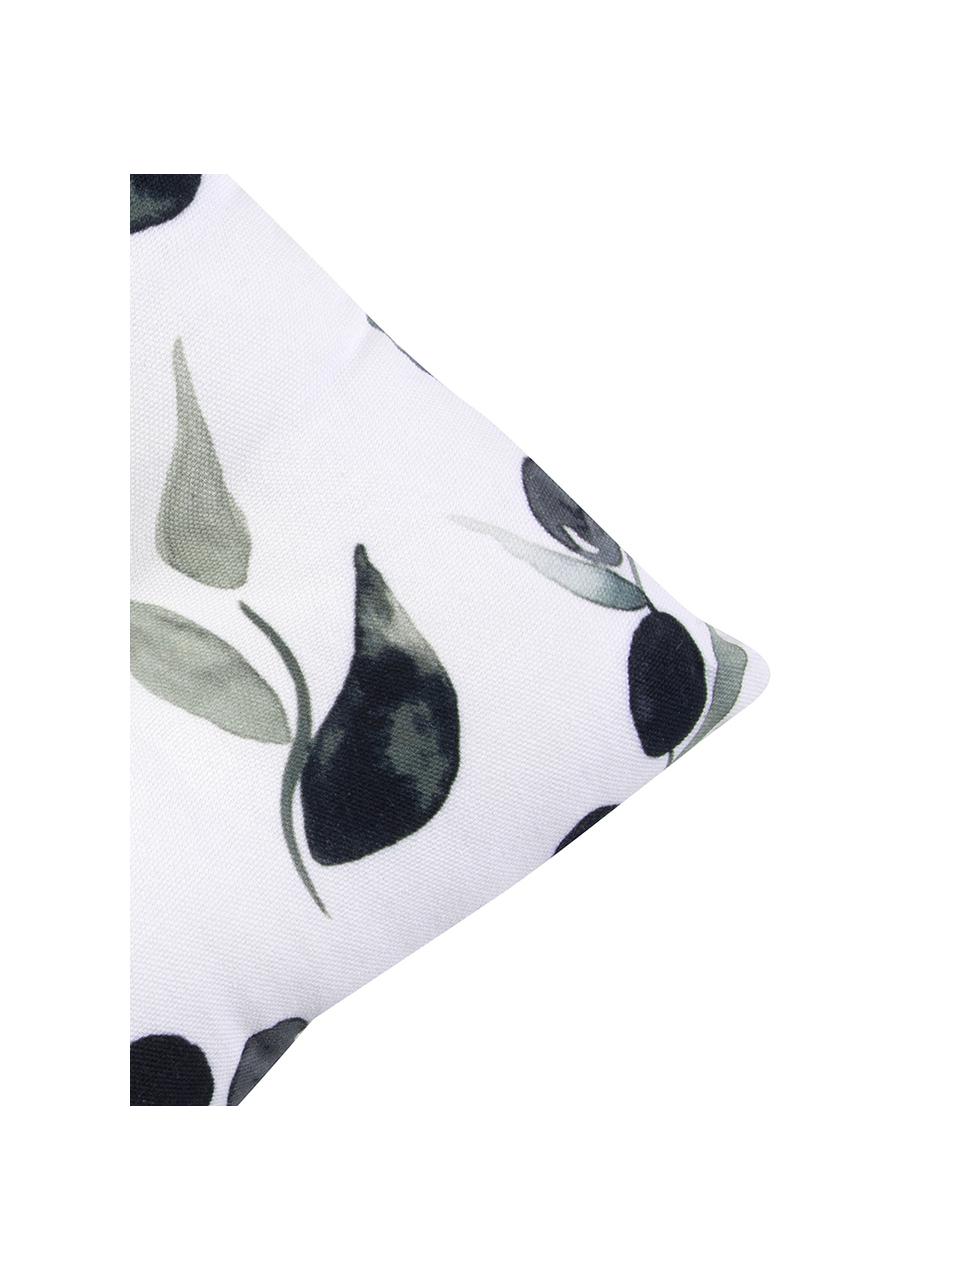 Poduszka na siedzisko Oliva, Tapicerka: bawełna, Biały, ciemny szary, zielony, S 40 x D 40 cm